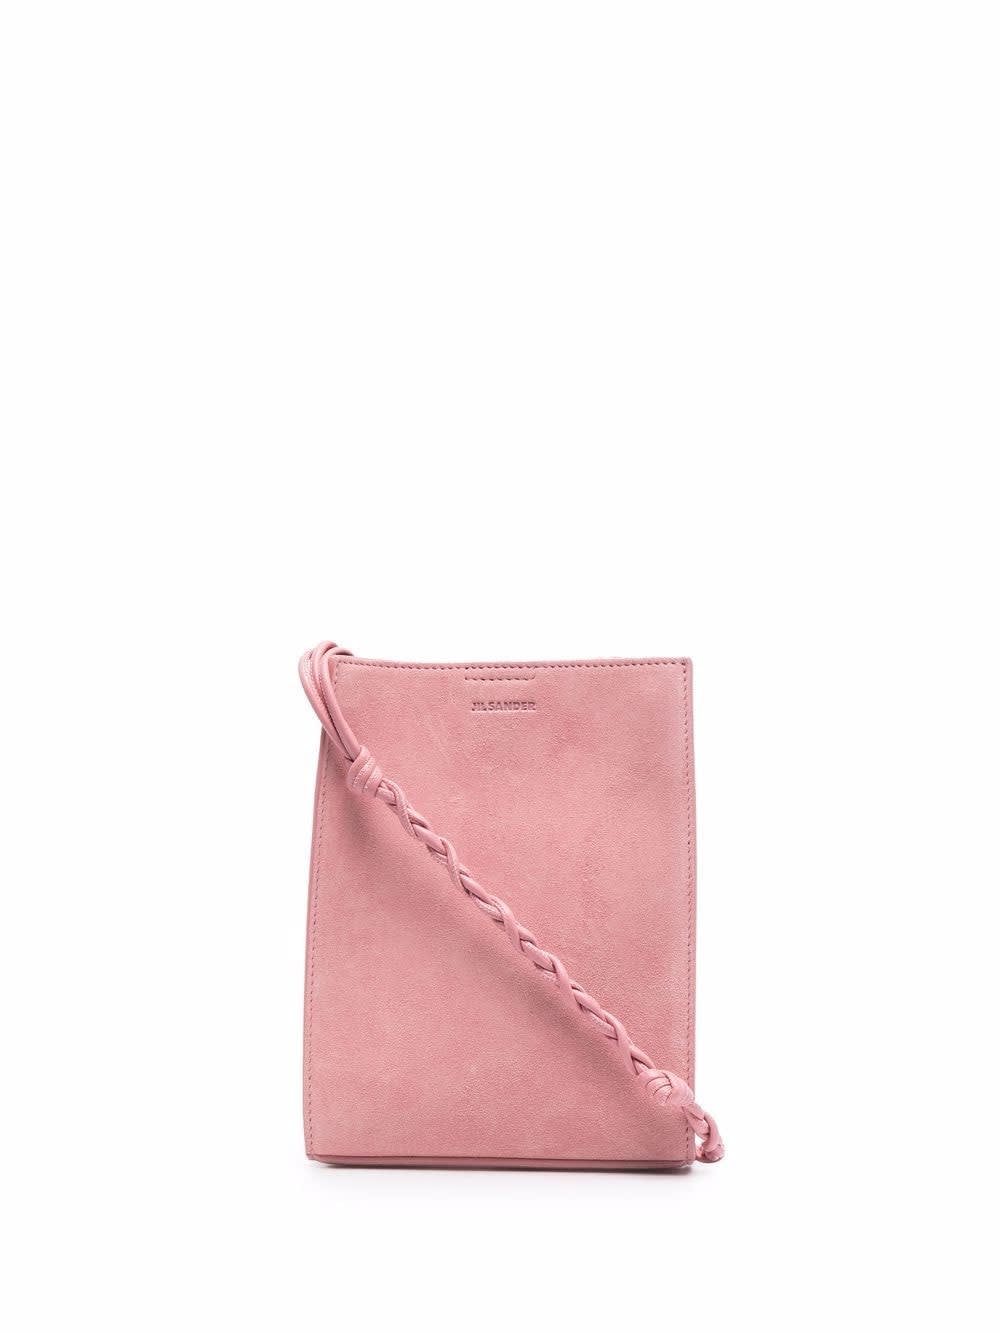 Jil Sander Pink Small Tangle Bag